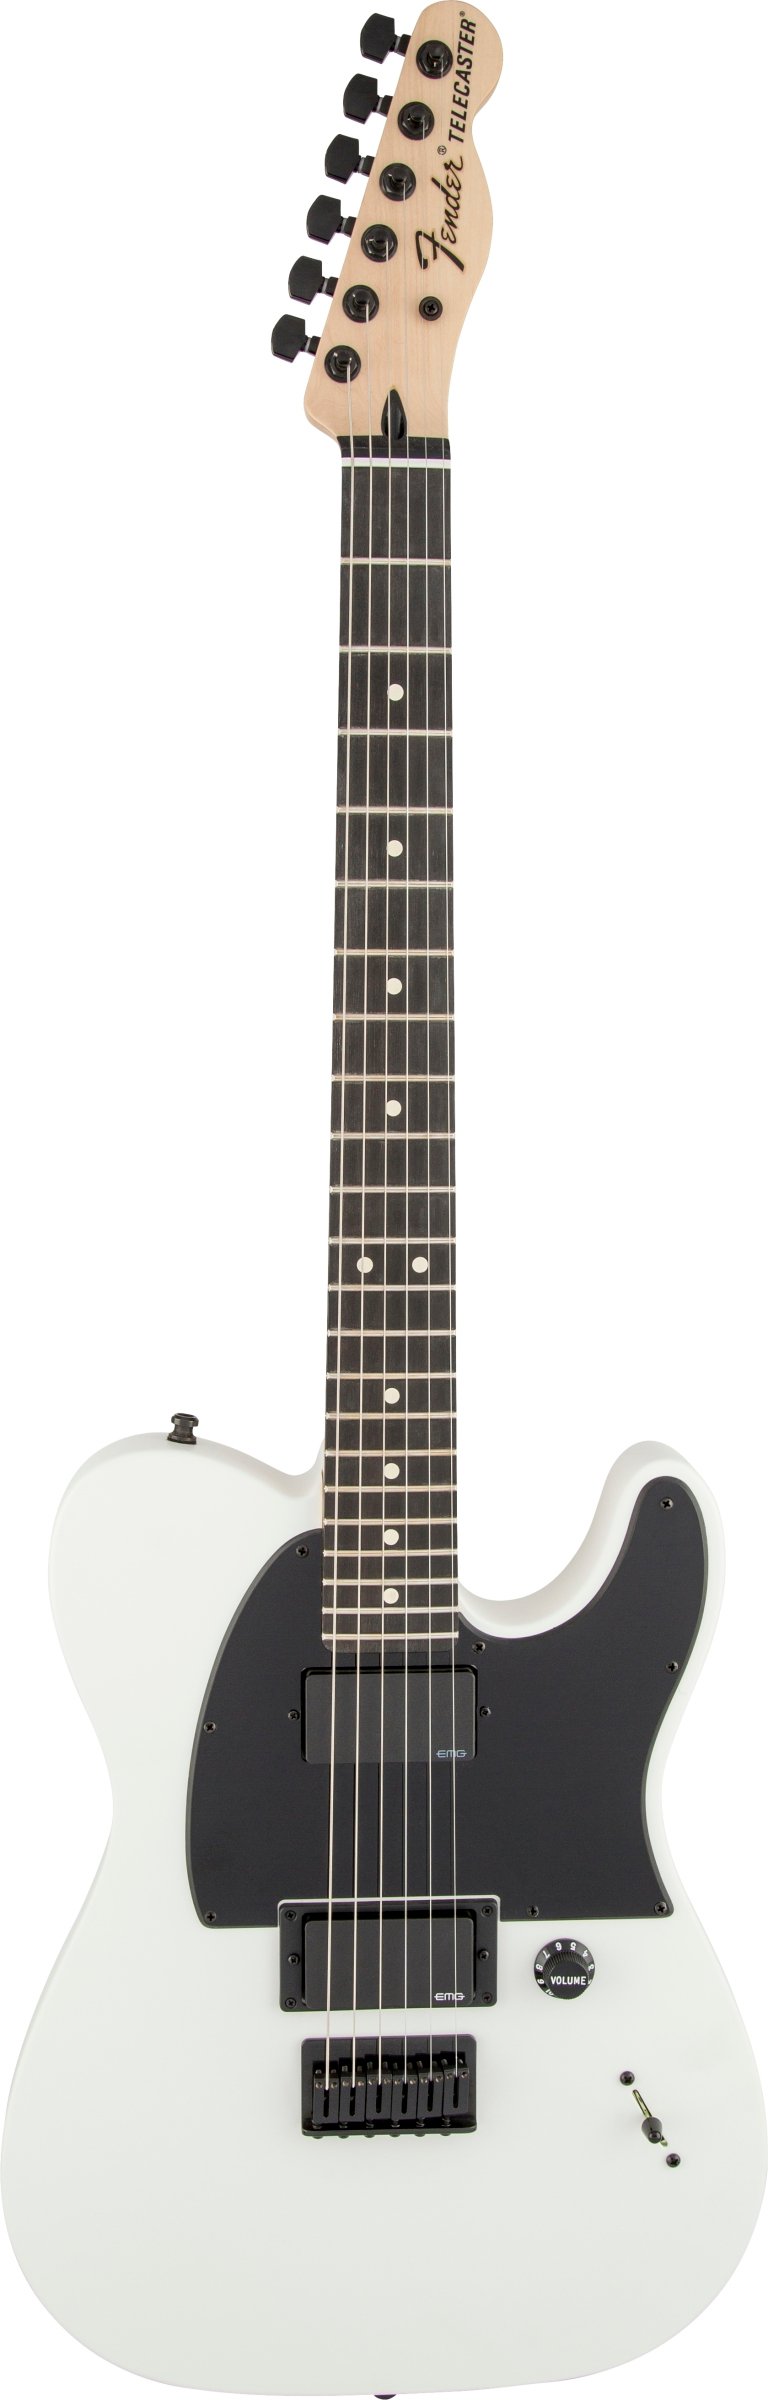 Jual Fender Artist Jim Root Telecaster Guitar